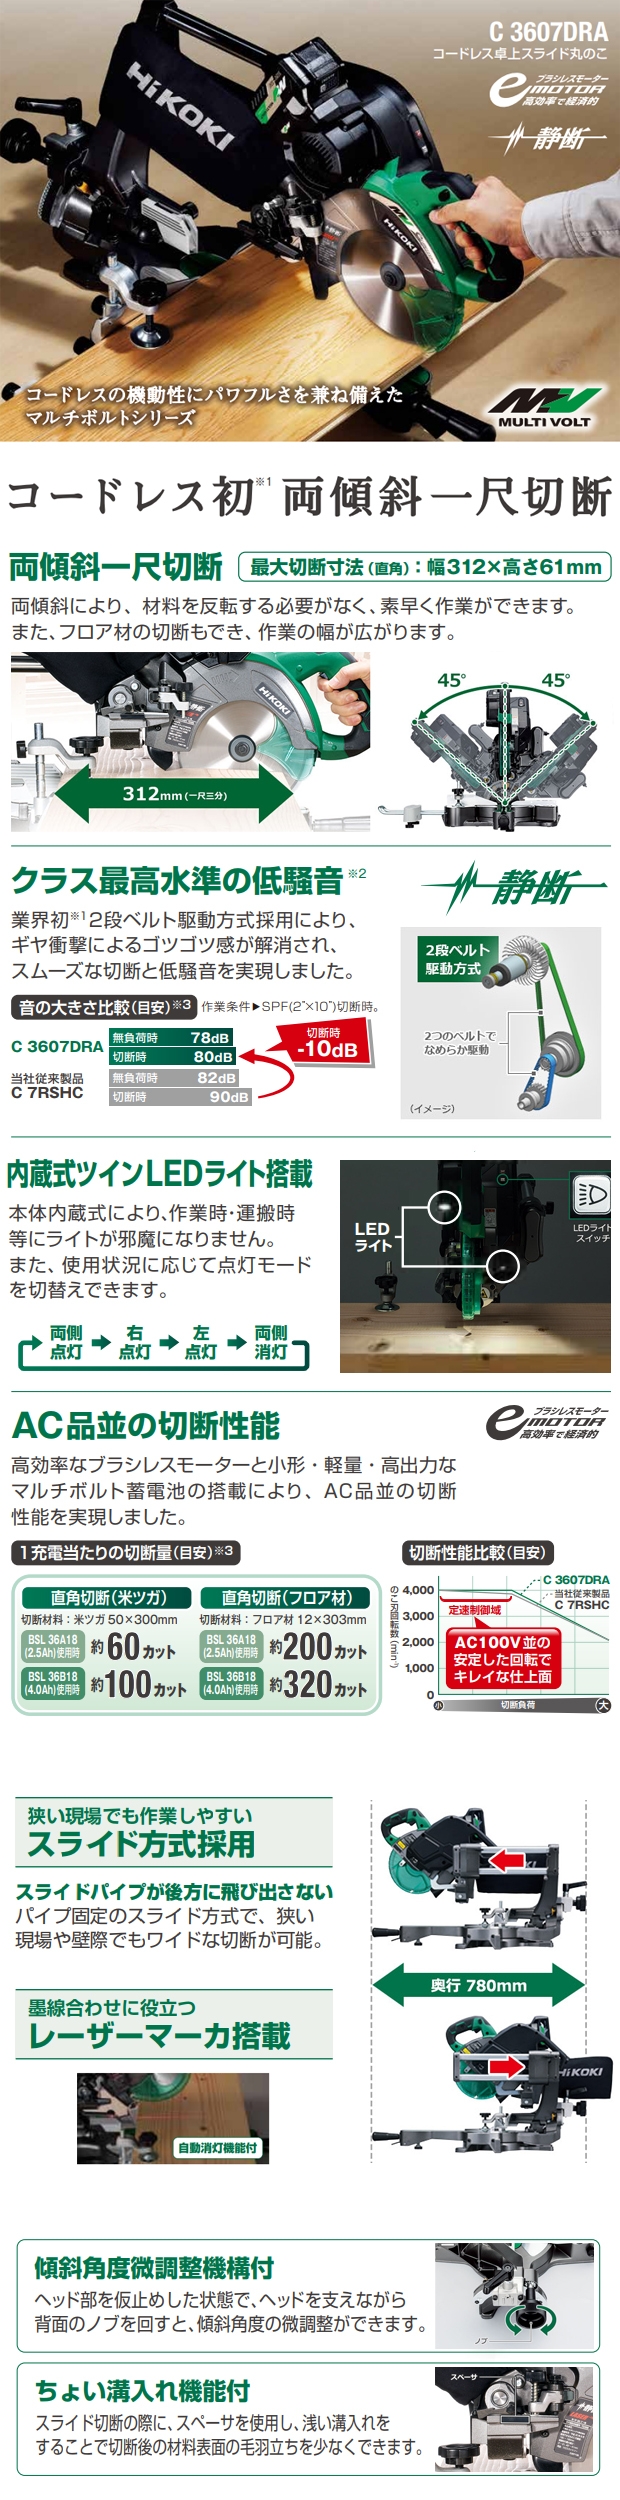 HiKOKI コードレス190mm卓上スライドマルノC3607DRA(K) 電動工具 